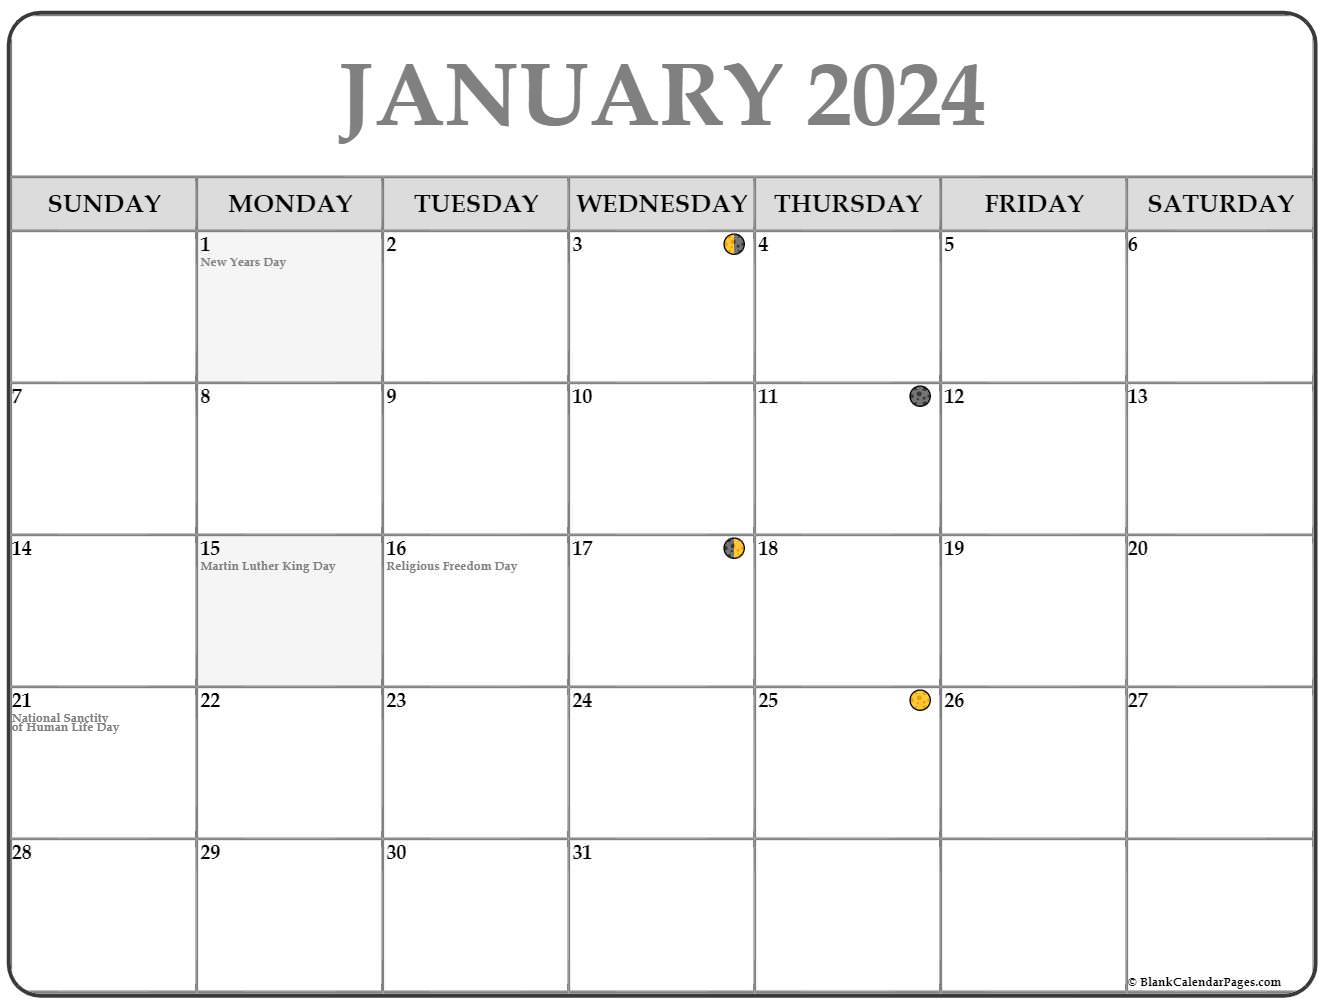 moon calendar january 2021 January 2021 Lunar Calendar Moon Phase Calendar moon calendar january 2021